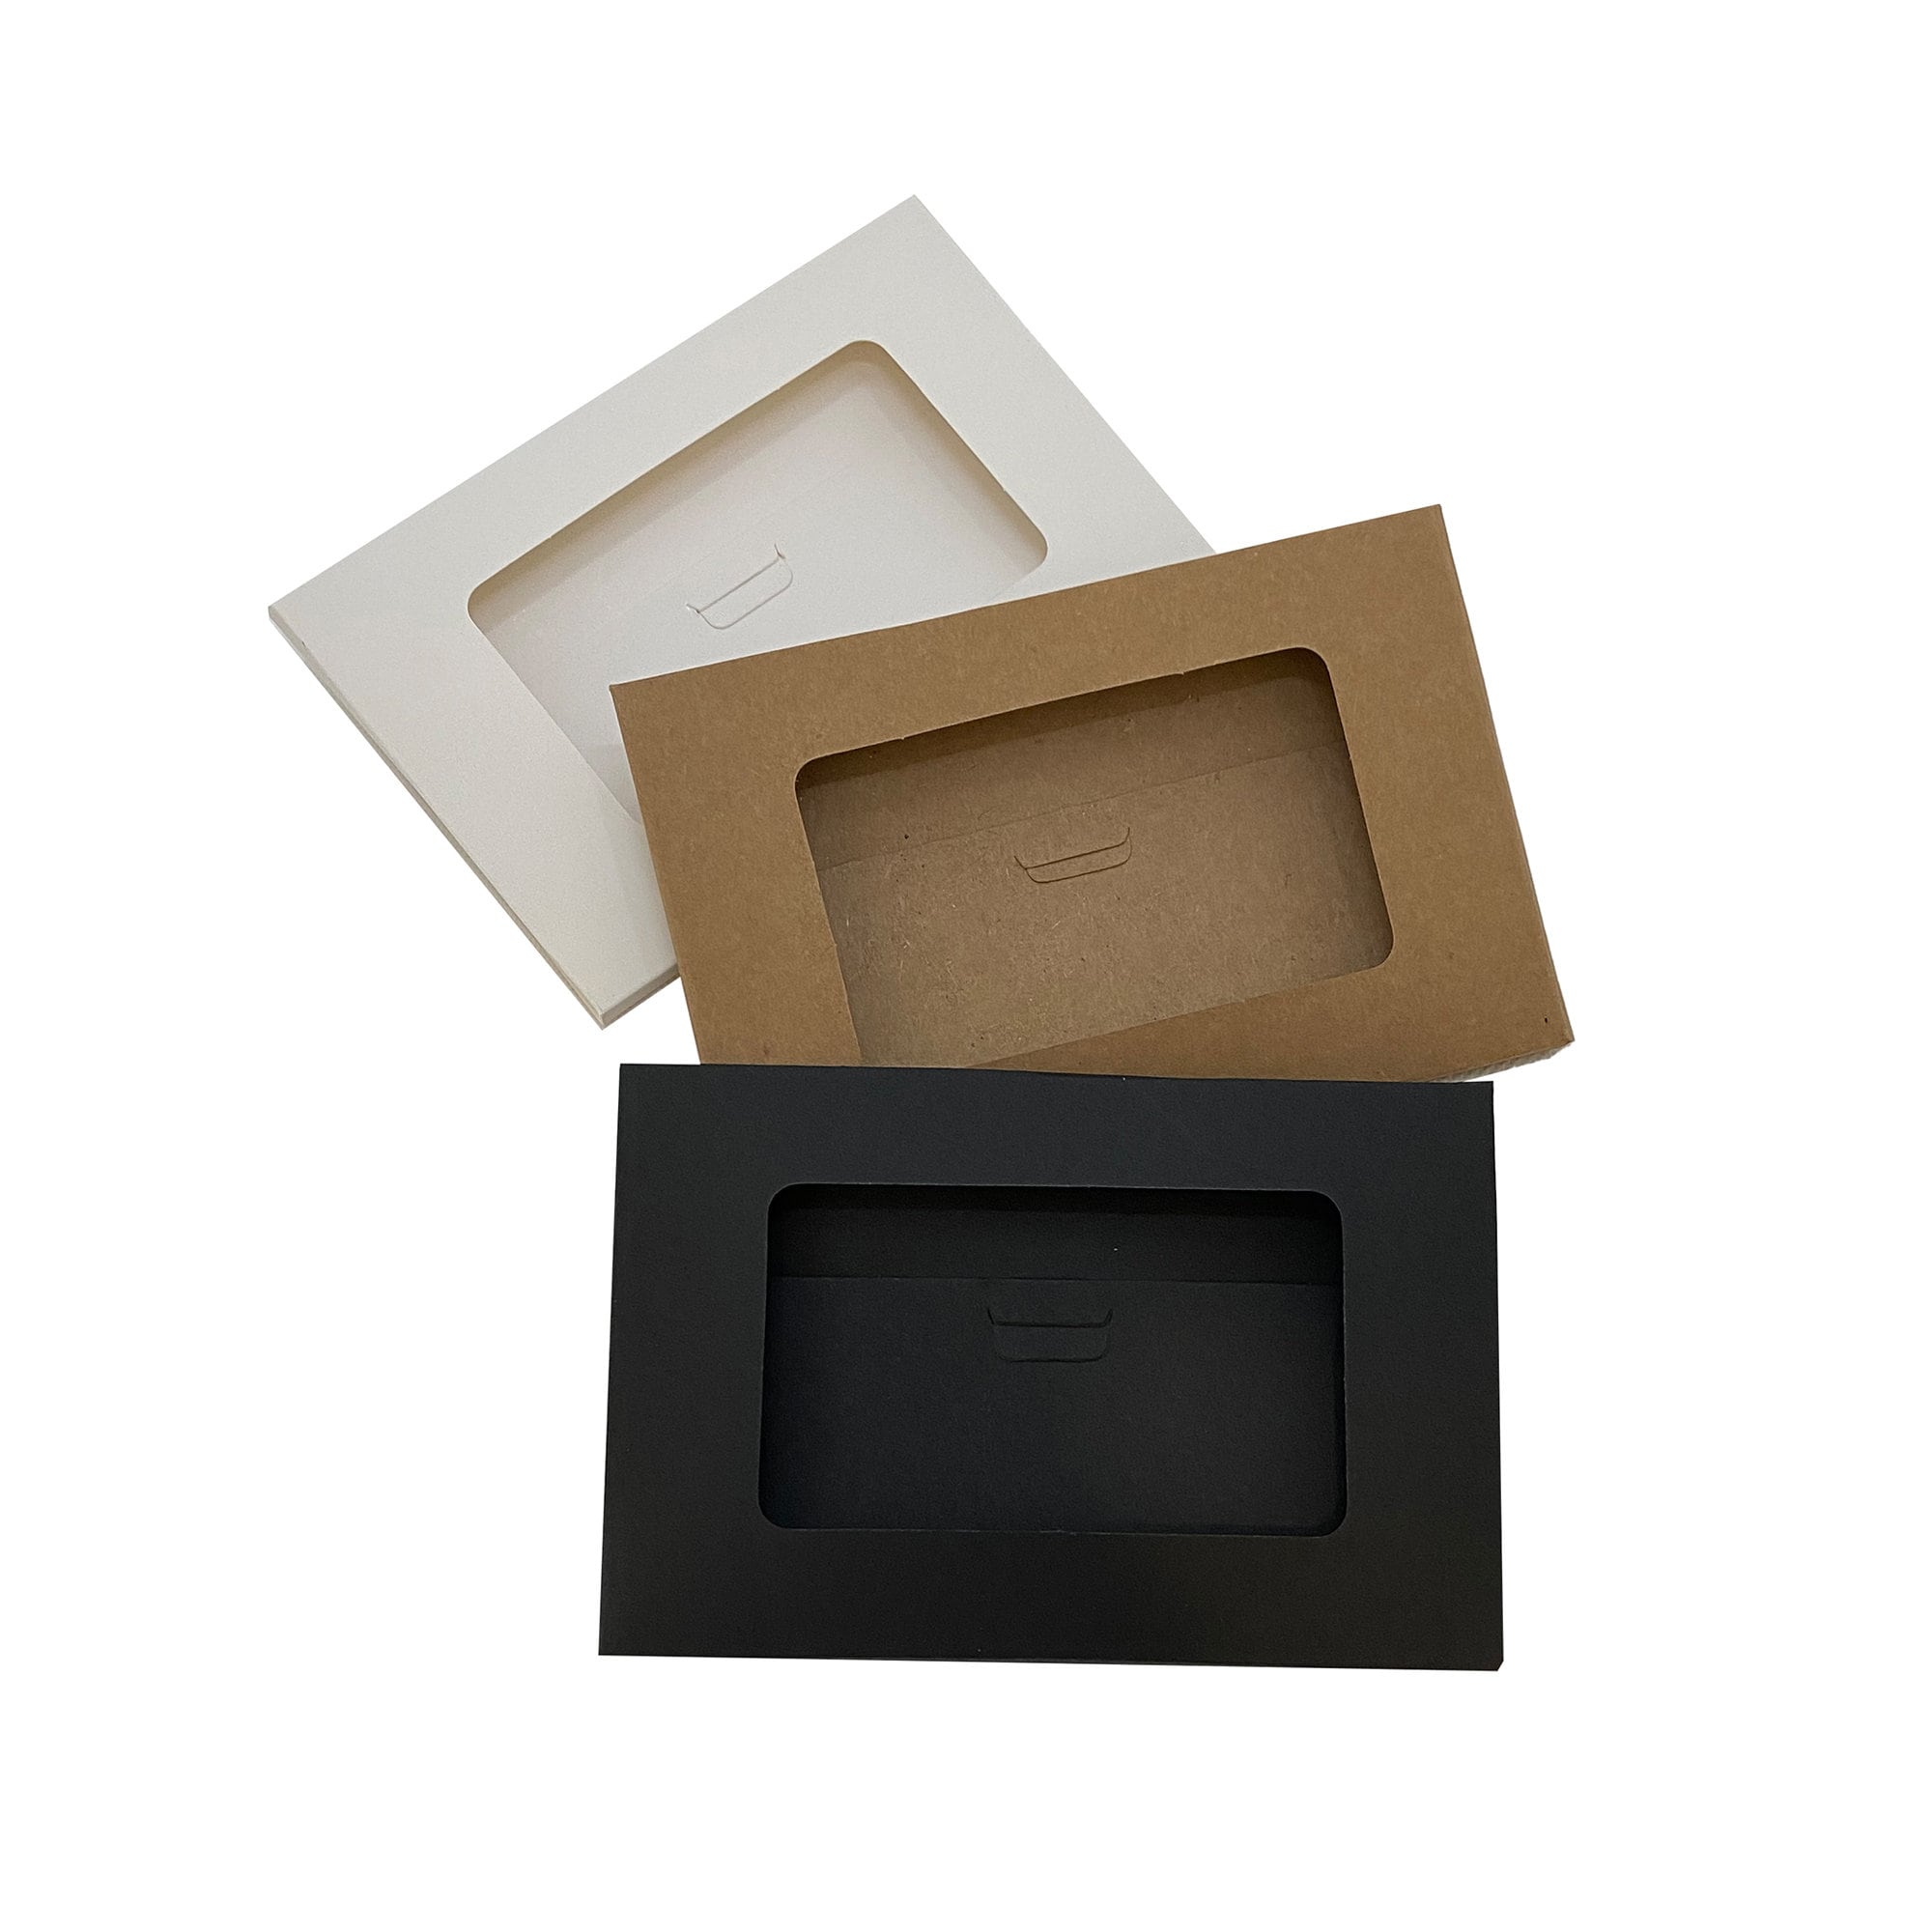 A6 A7 White Envelopes, 4x6 5x7 Size Envelopes – YoureInvitedPrints